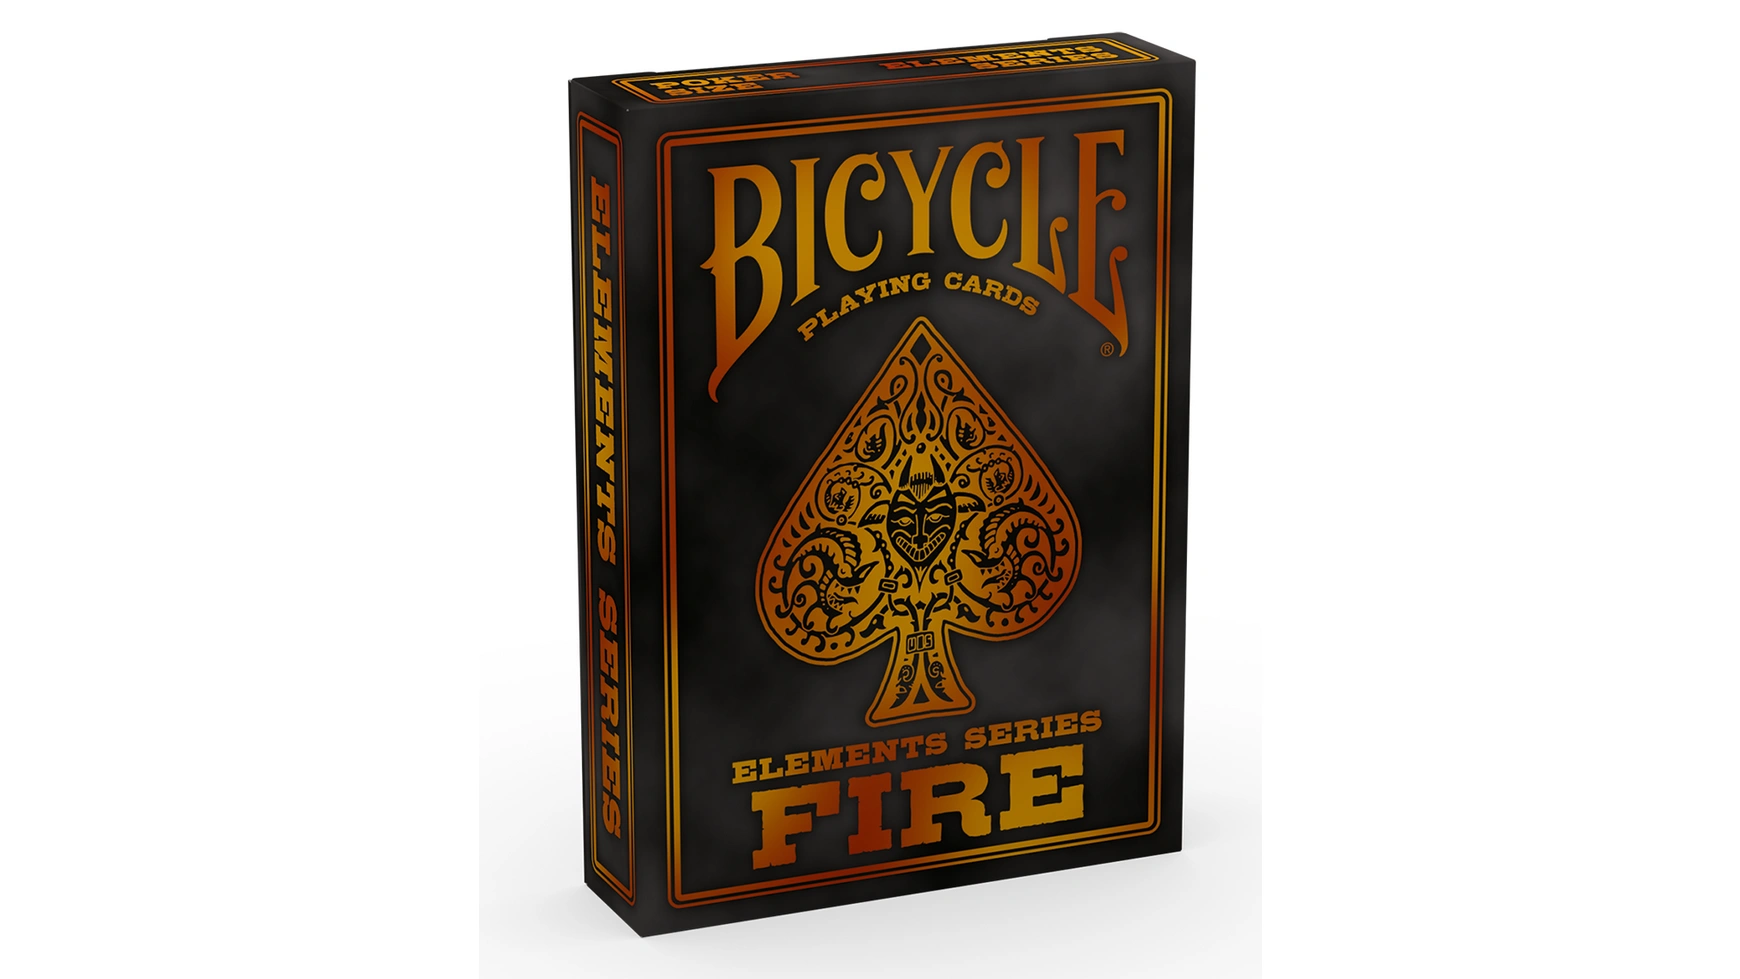 Bicycle Огонь uspcc игральные карты bicycle pro poker peek uspcc сша 54 карты